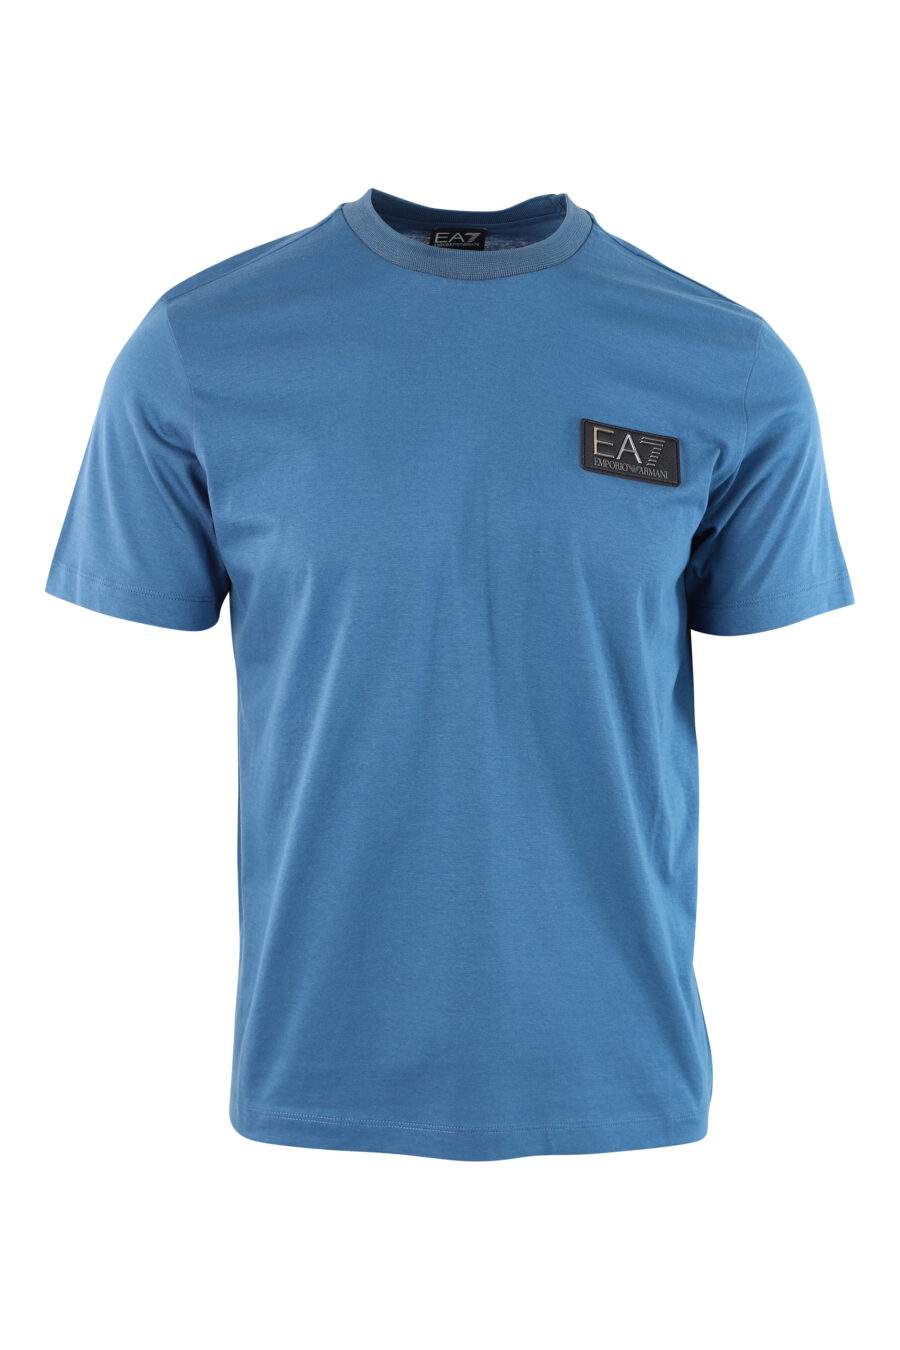 Hellblaues T-Shirt mit Mini-Logo auf Abzeichen - IMG 3797